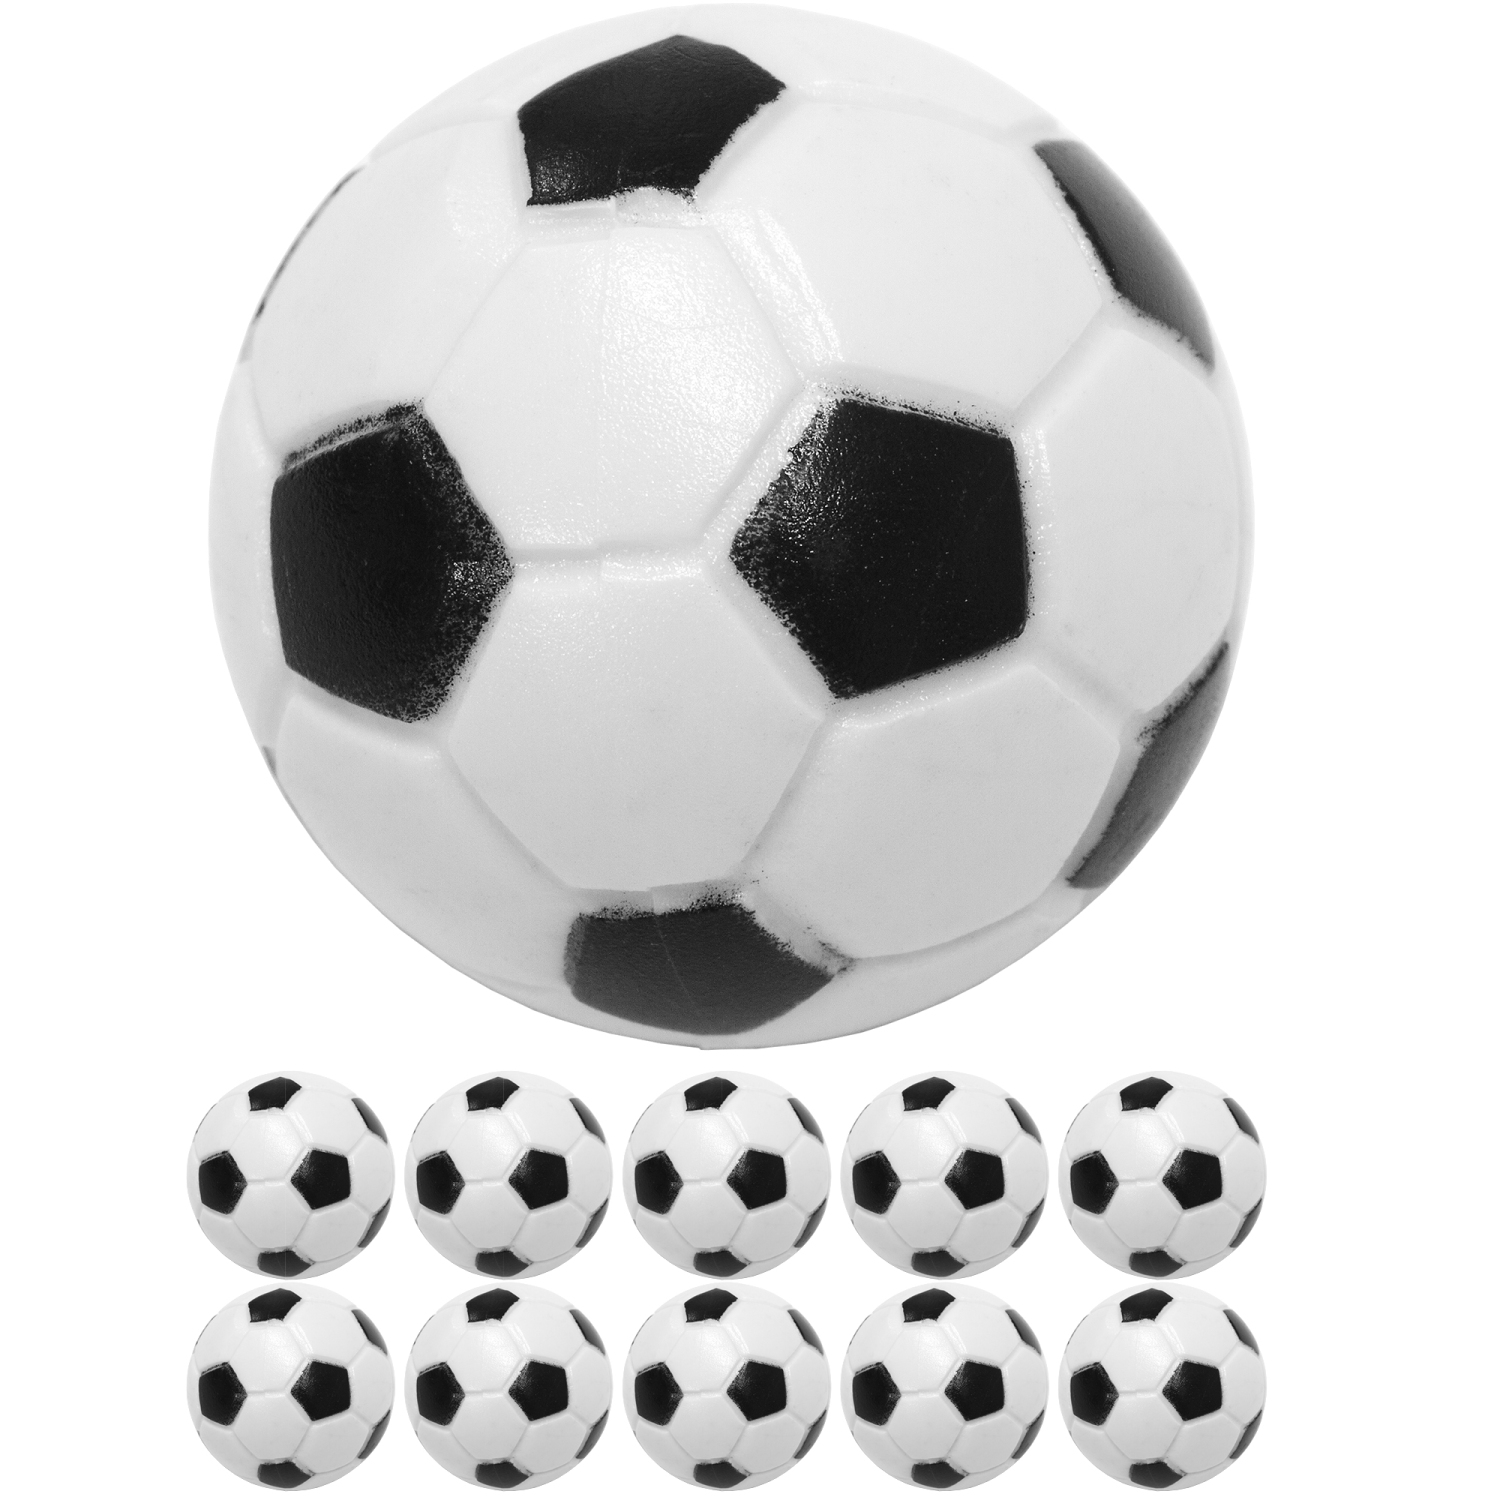 GAMES PLANET® 10 Tischfussball Kickerbälle, Ø 31mm, Tischkicker-Zubehör, Freizeit